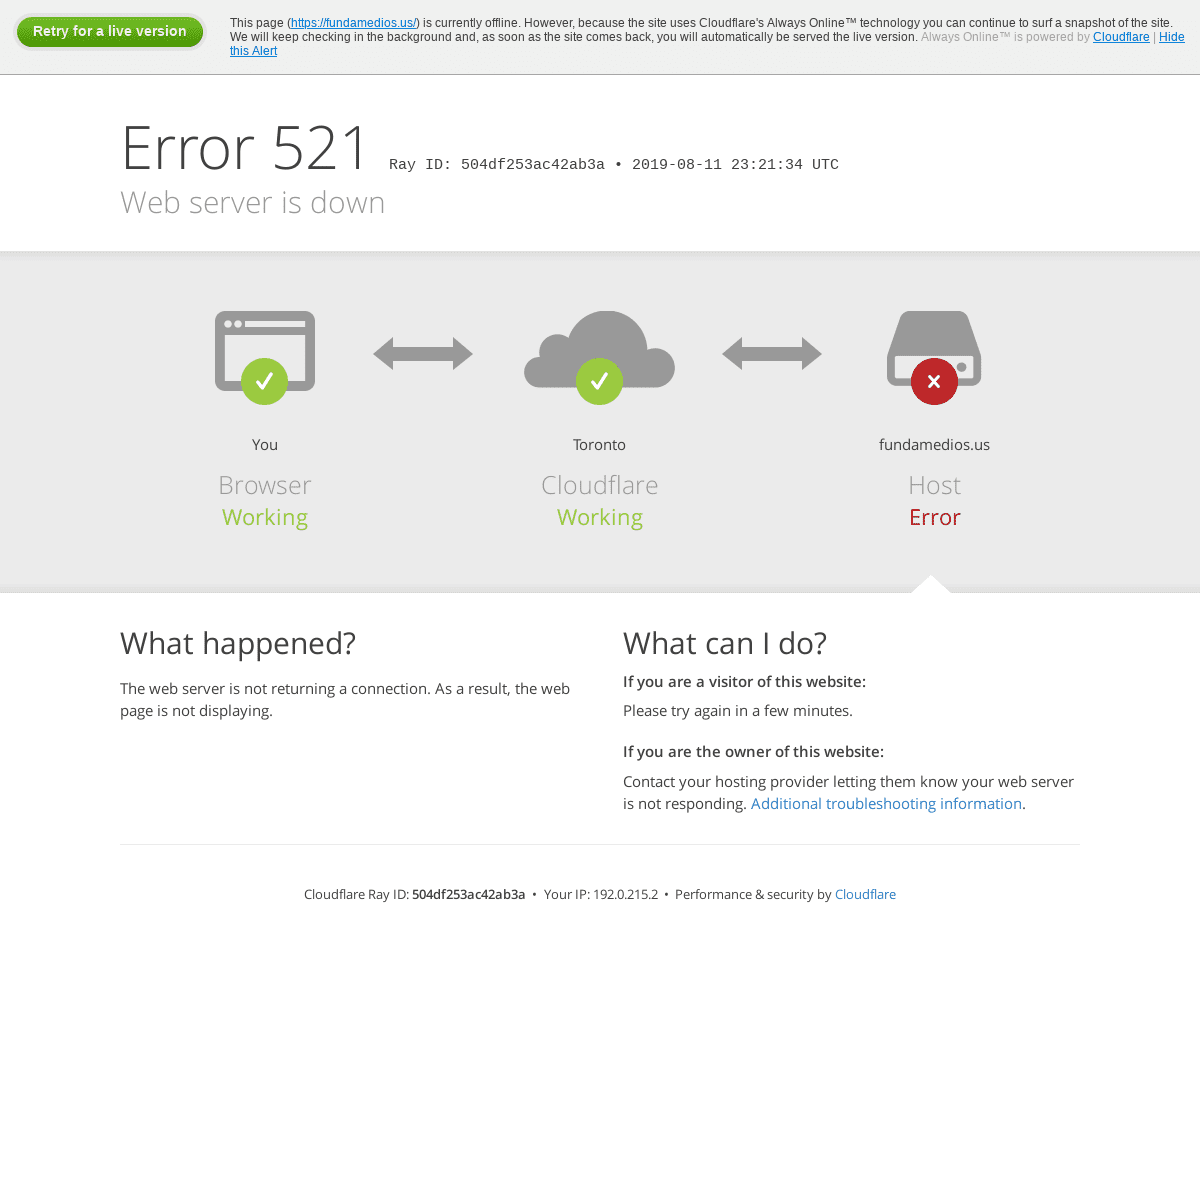 fundamedios.us | 521: Web server is down